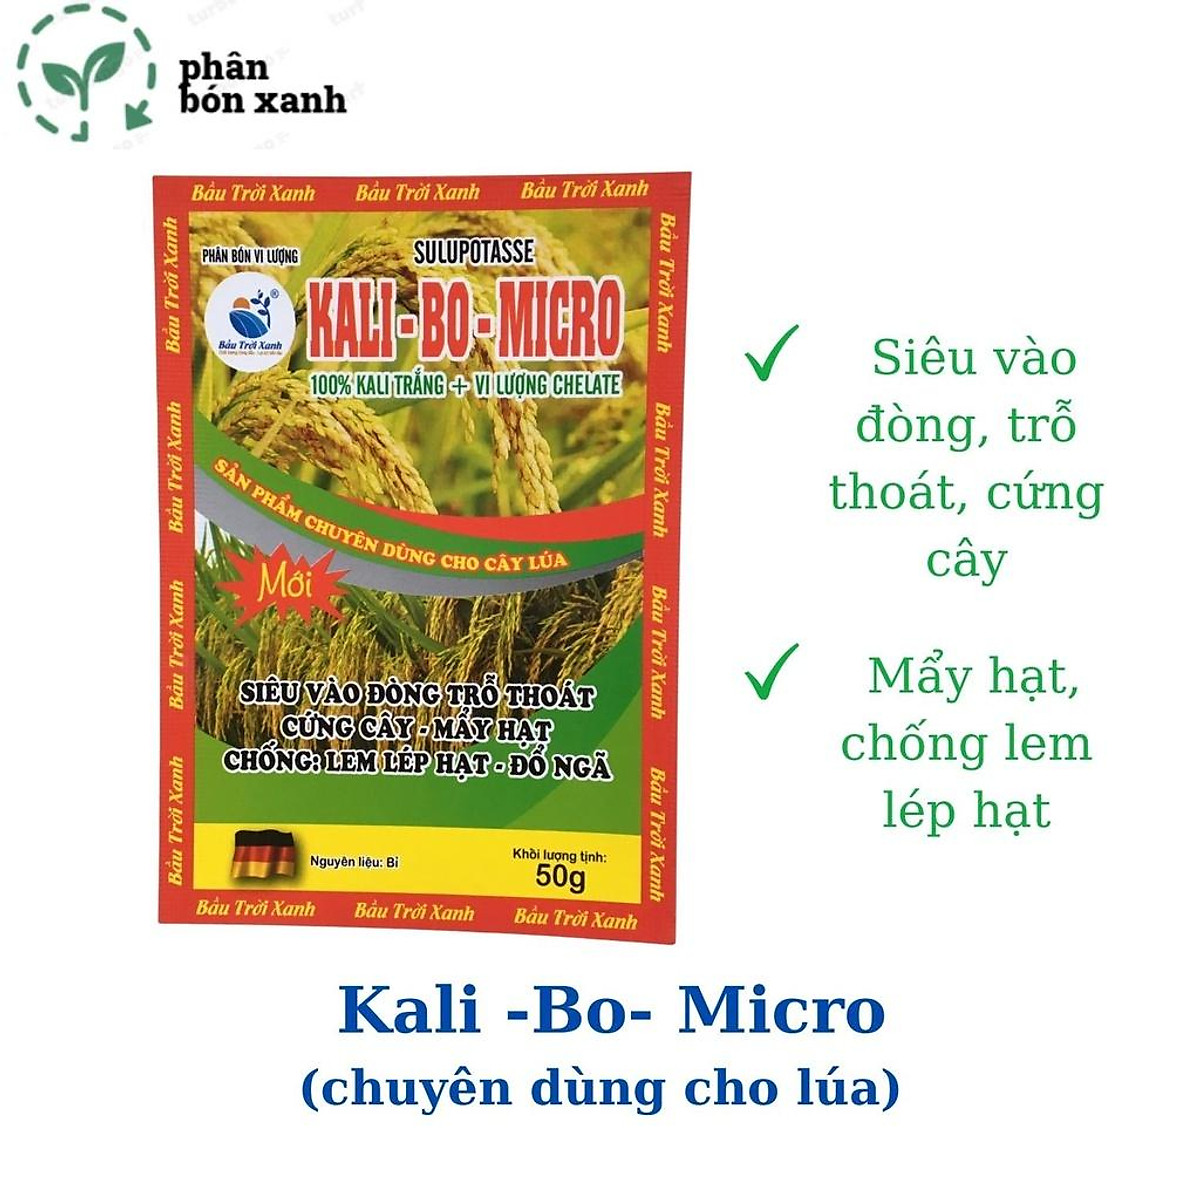 Phân bón Kali-bo-micro dùng cho lúa, giúp cây siêu vào đòng, trỗ ...